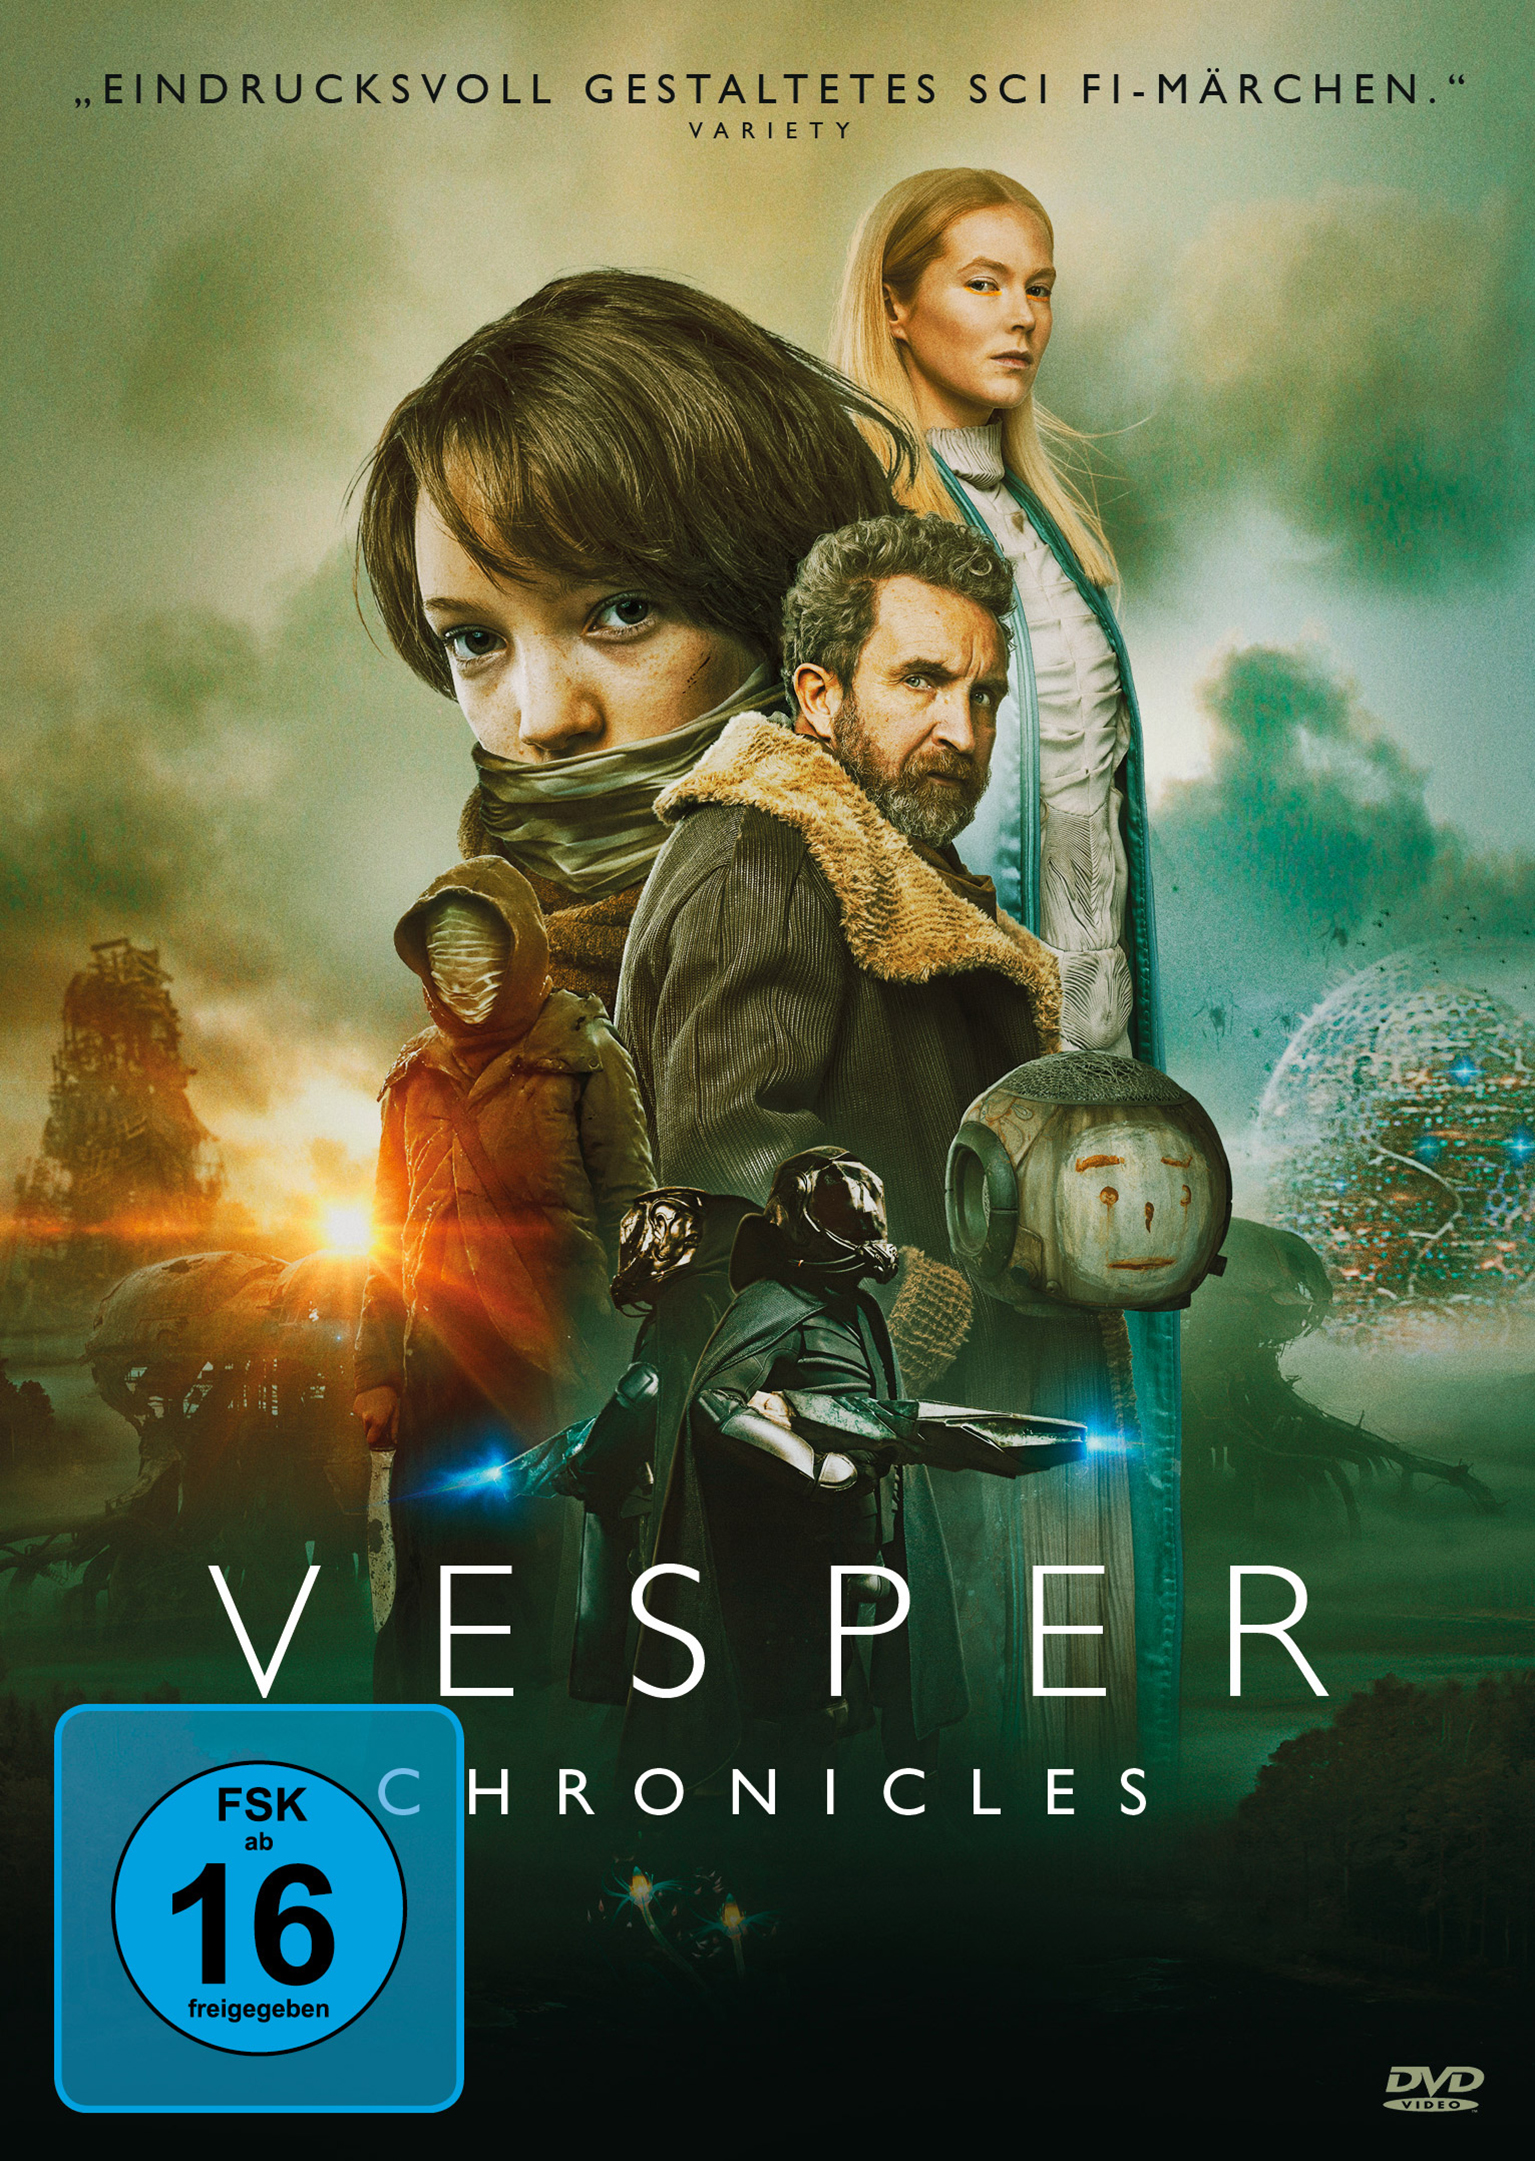 Vesper Chronicles (DVD)  Cover